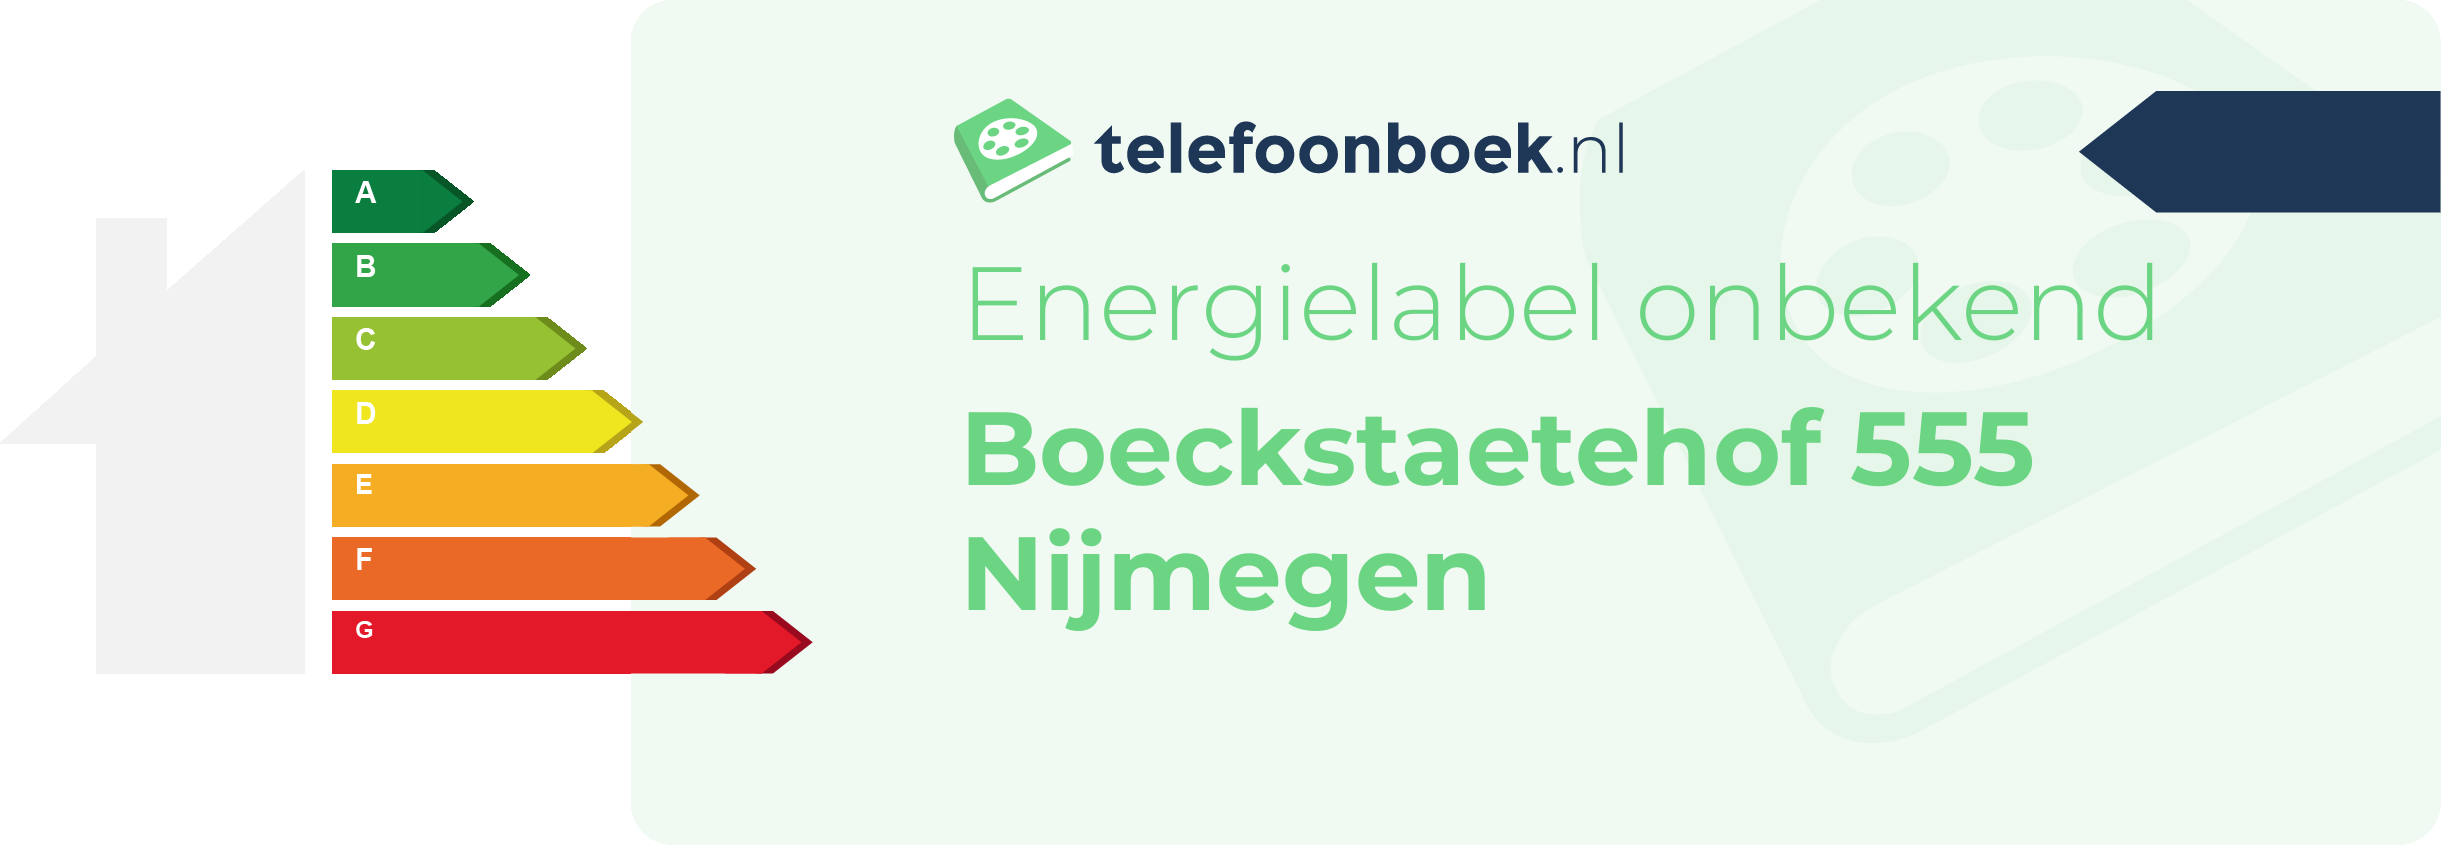 Energielabel Boeckstaetehof 555 Nijmegen